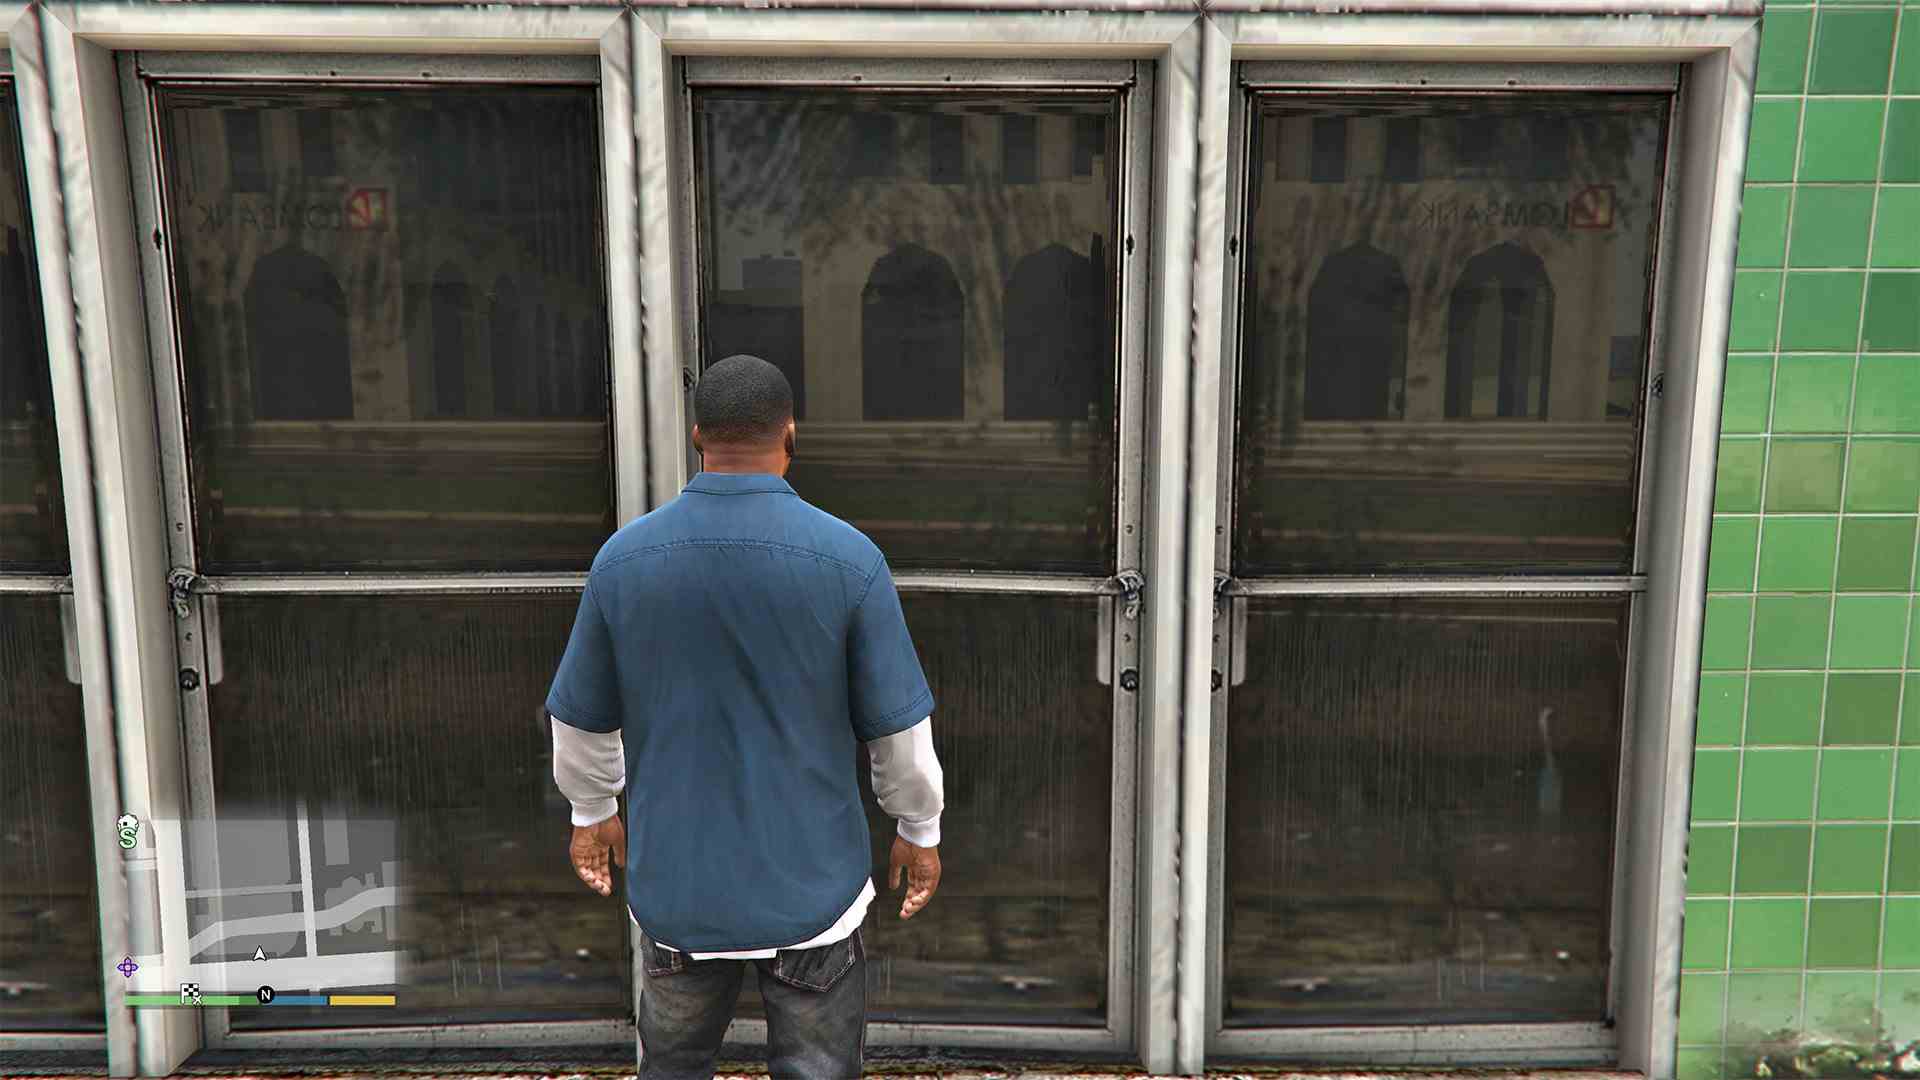 Grand Theft Auto V GTA5 spiegelt Spiegelreflexion technisches Gameplay Spieldesign Herausforderung Raytracing